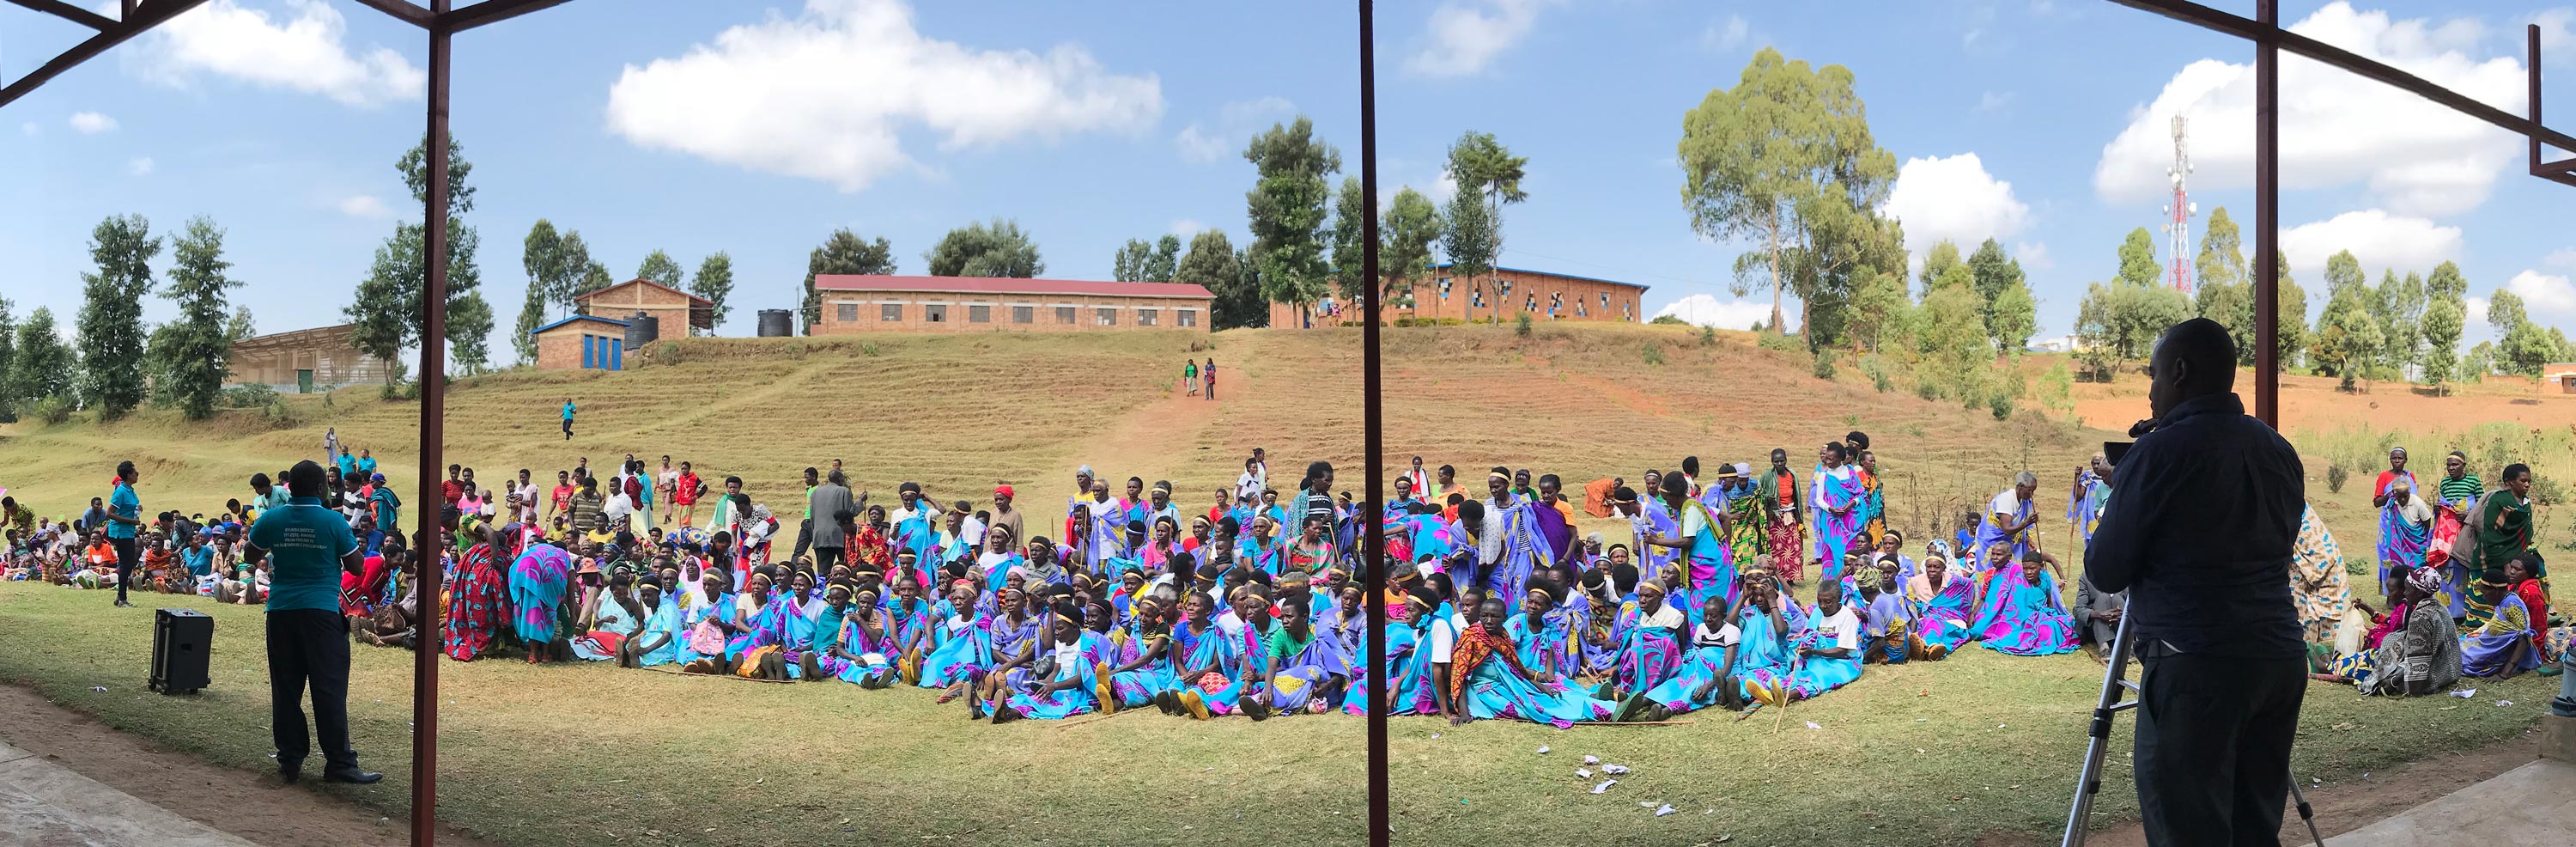 15 Year Old Girl Rwanda Trauma Relief Program